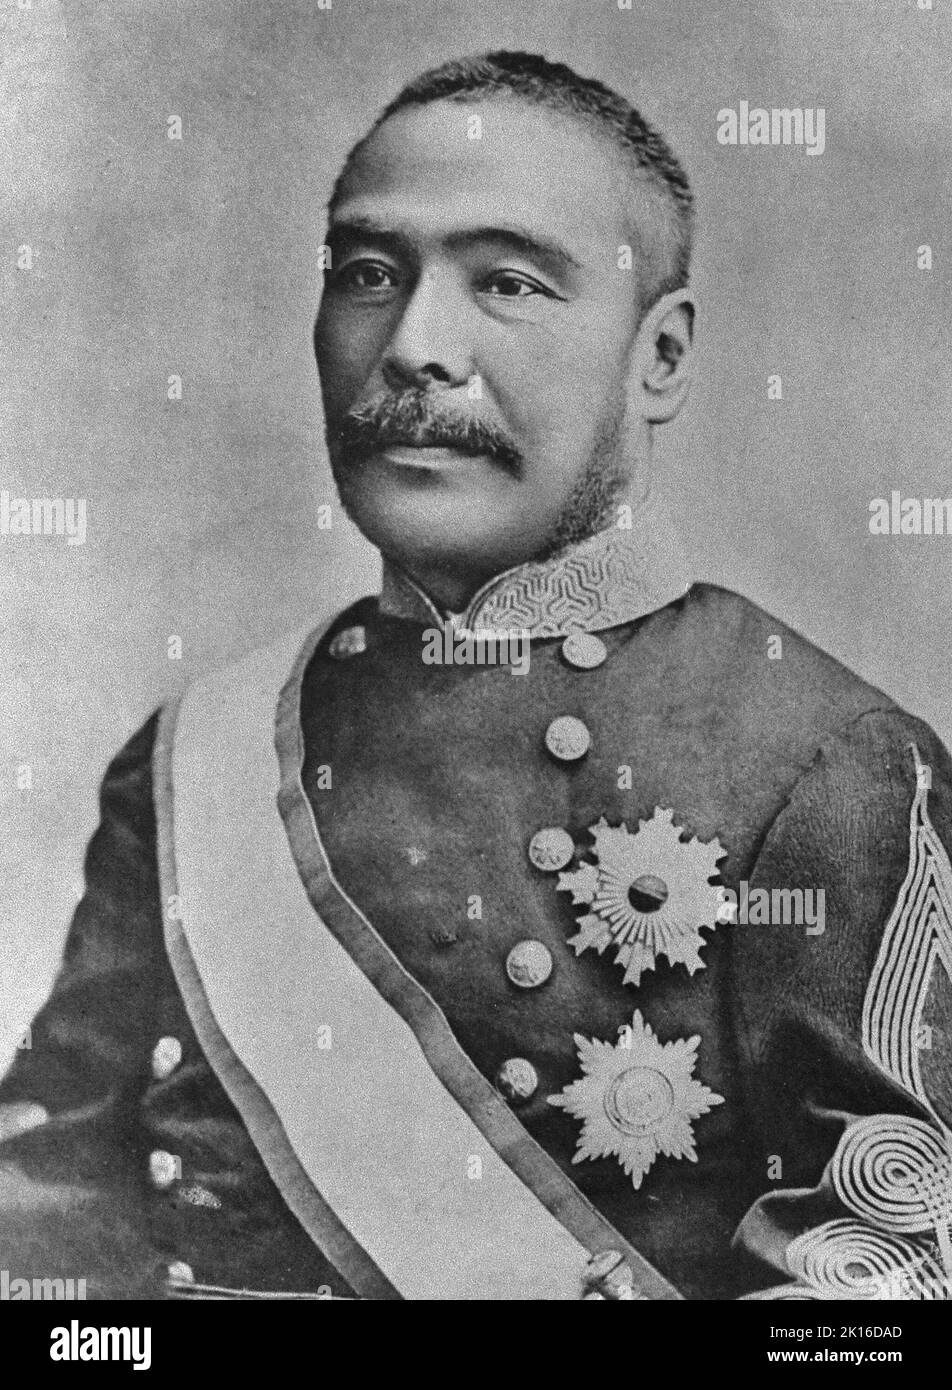 Porträt von Kuroda Kiyotaka (1840 -1900), japanischer Politiker der Meiji-Zeit, Generalleutnant der kaiserlichen japanischen Armee, zweiter Premierminister Japans (1888 - 1889). Er war auch stellvertretender Vorsitzender der Hokkaido Development Commission (Kaitaku-shi). Stockfoto